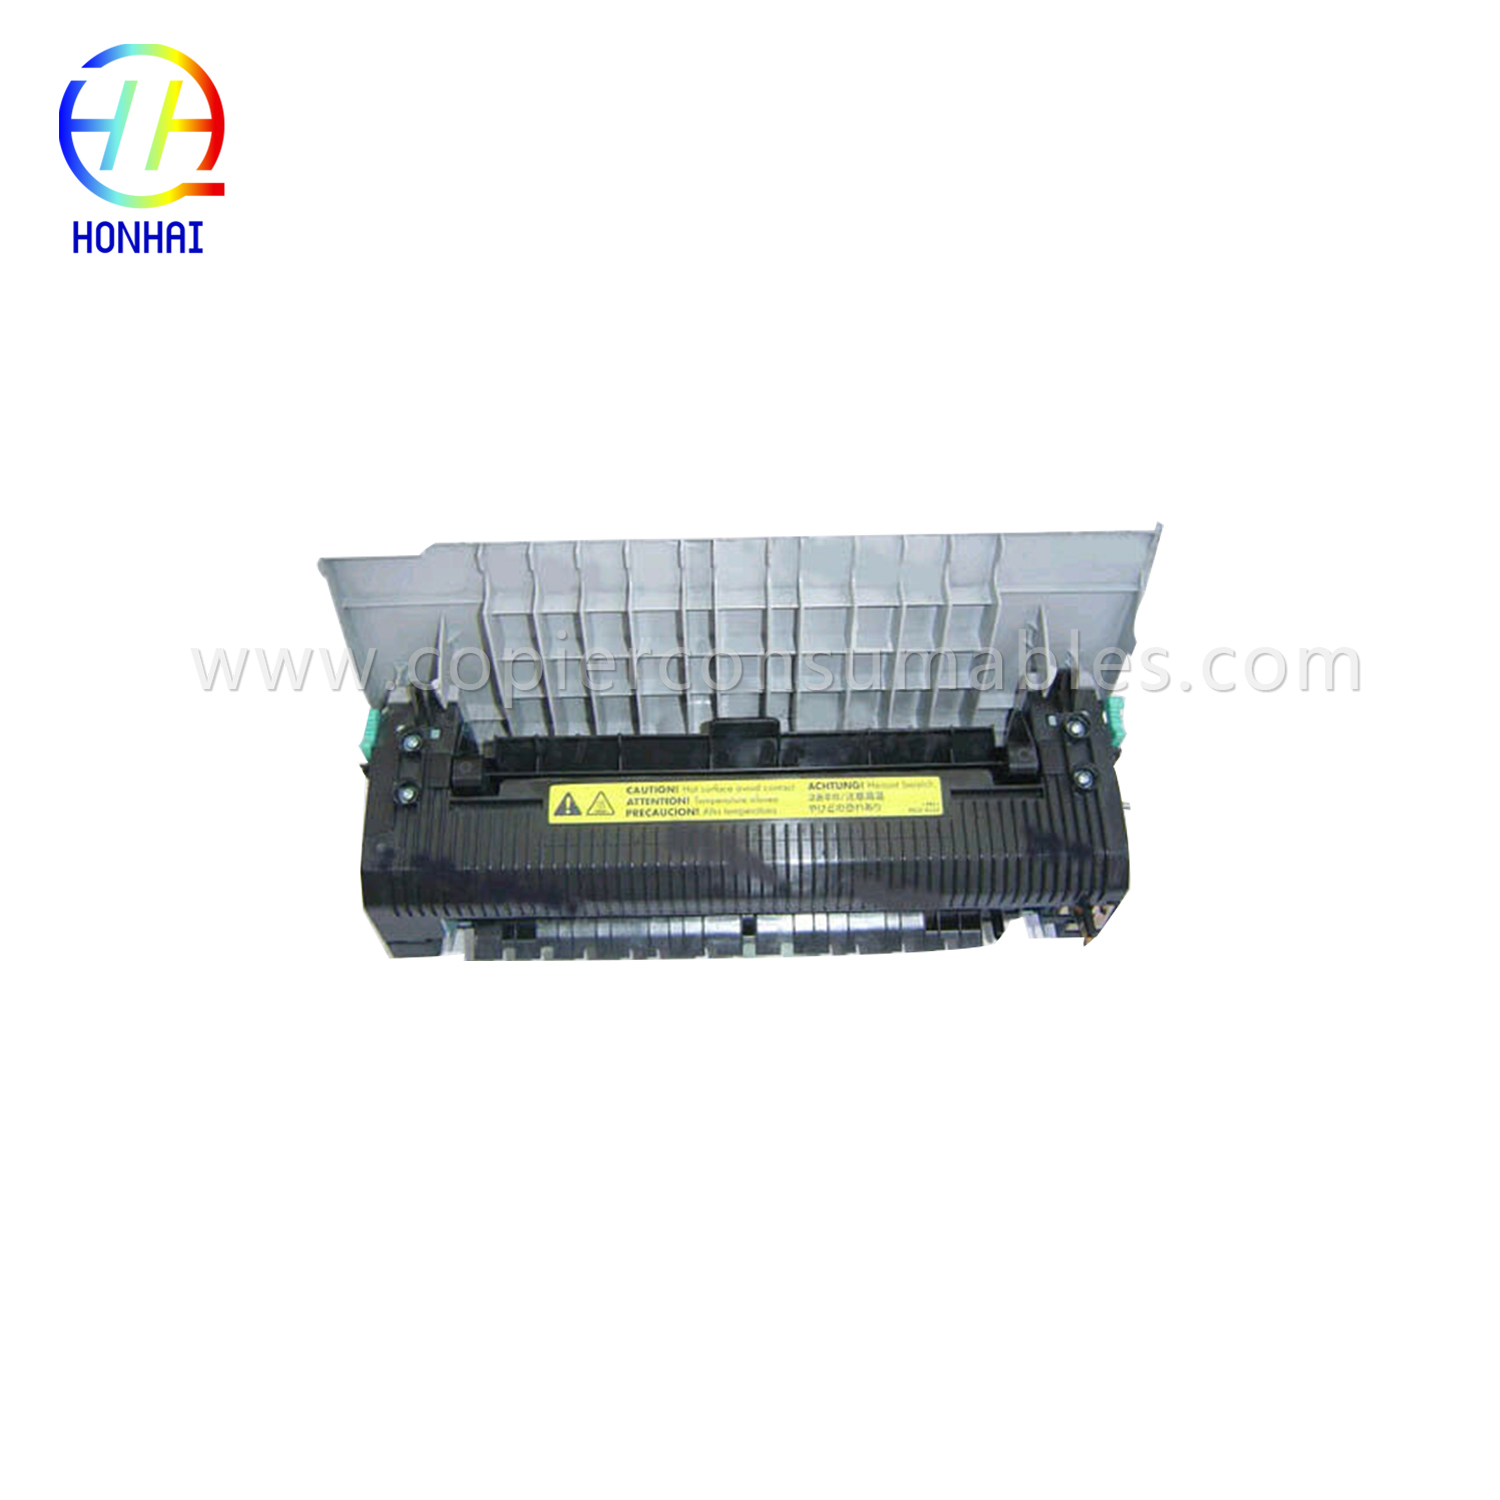 Unit Fuser untuk HP Color LaserJet 2550 2550L 2550ln 2550n (RG5-7572-110Cn)